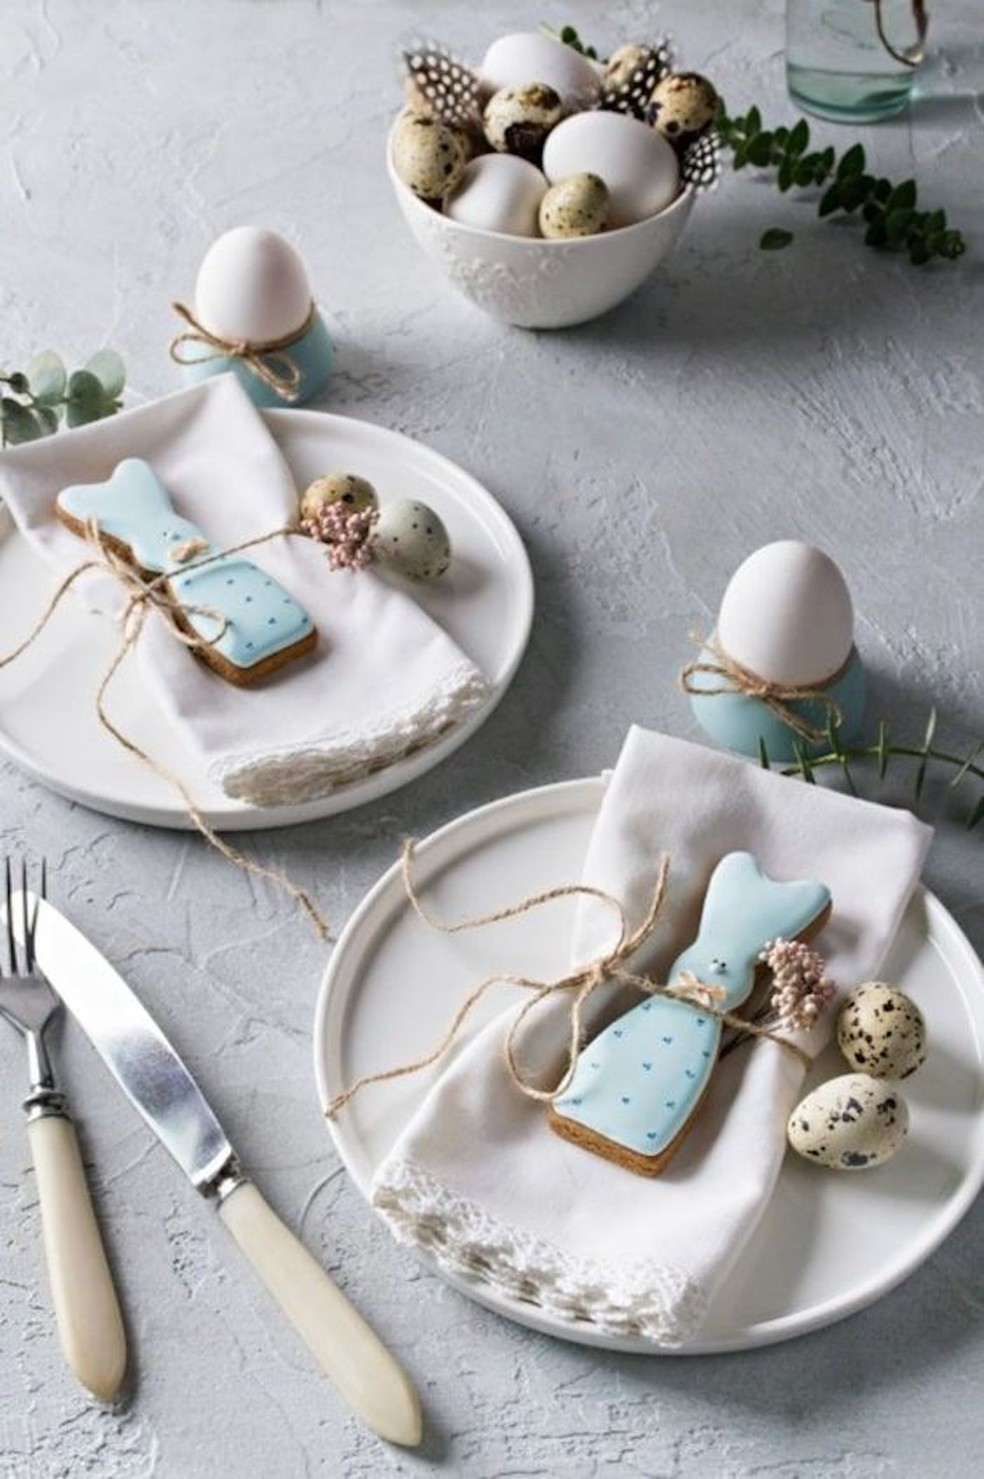 Uma bolacha decorada em formato de coelho pode acompanhar o guardanapo de mesa — Foto: Pinterest / Mariana Laterza / Reprodução